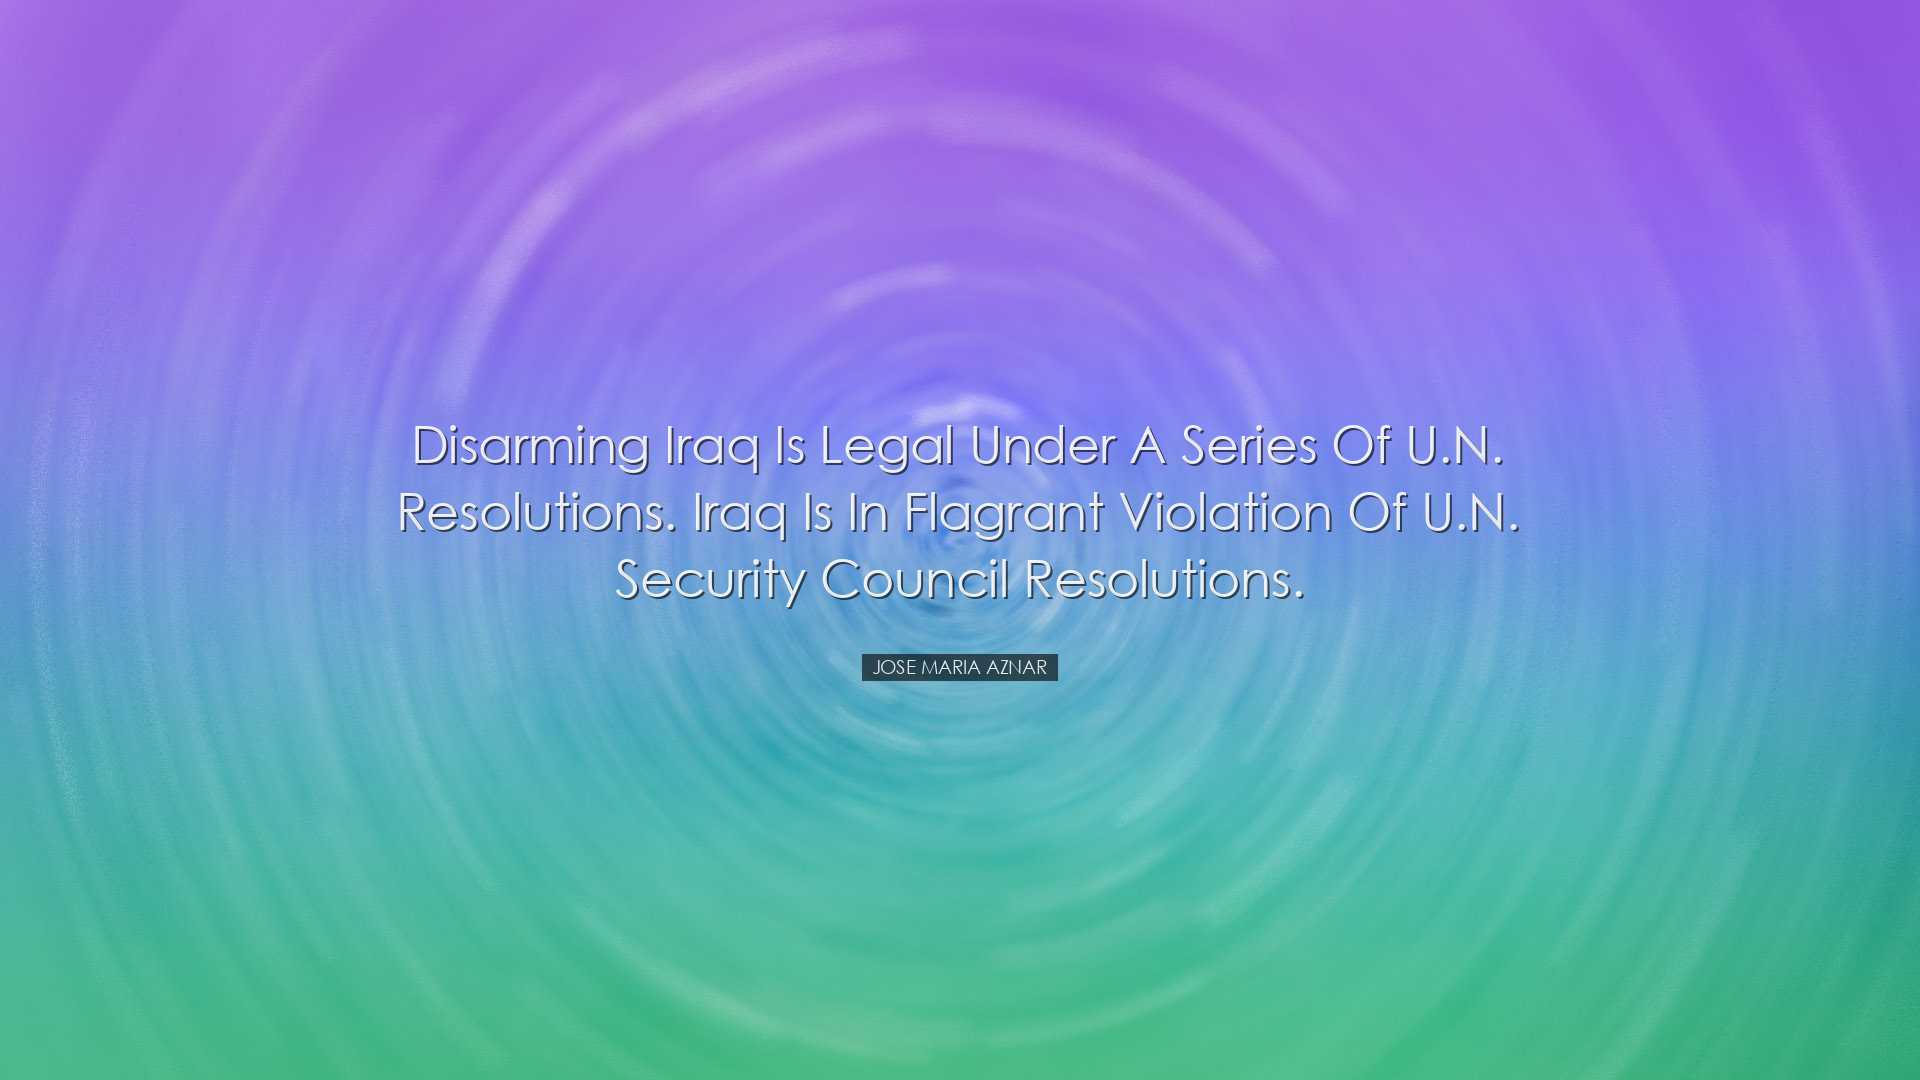 Disarming Iraq is legal under a series of U.N. resolutions. Iraq i